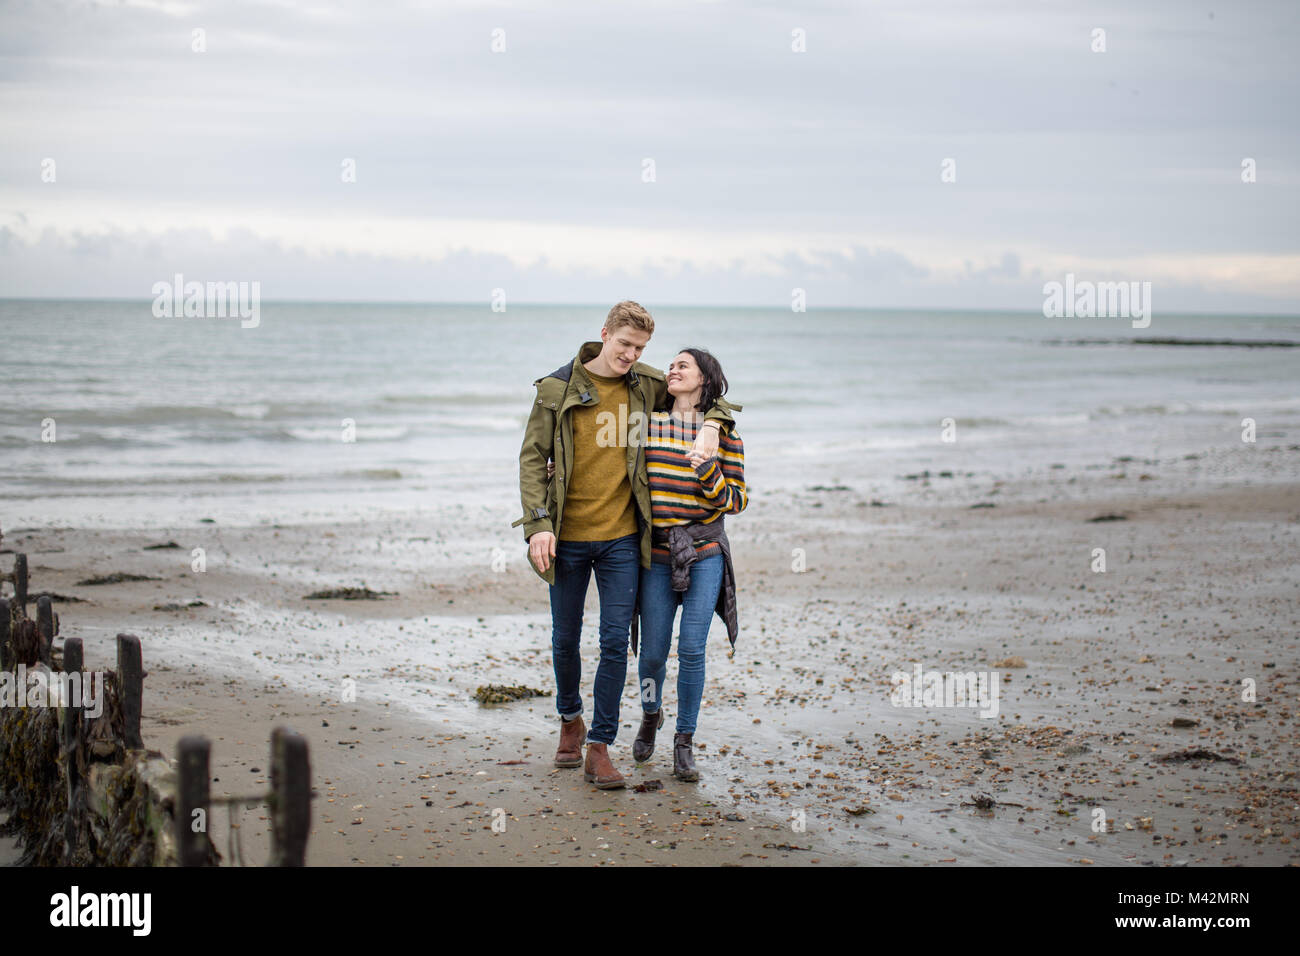 Jeune couple en train de marcher sur une plage en hiver Banque D'Images